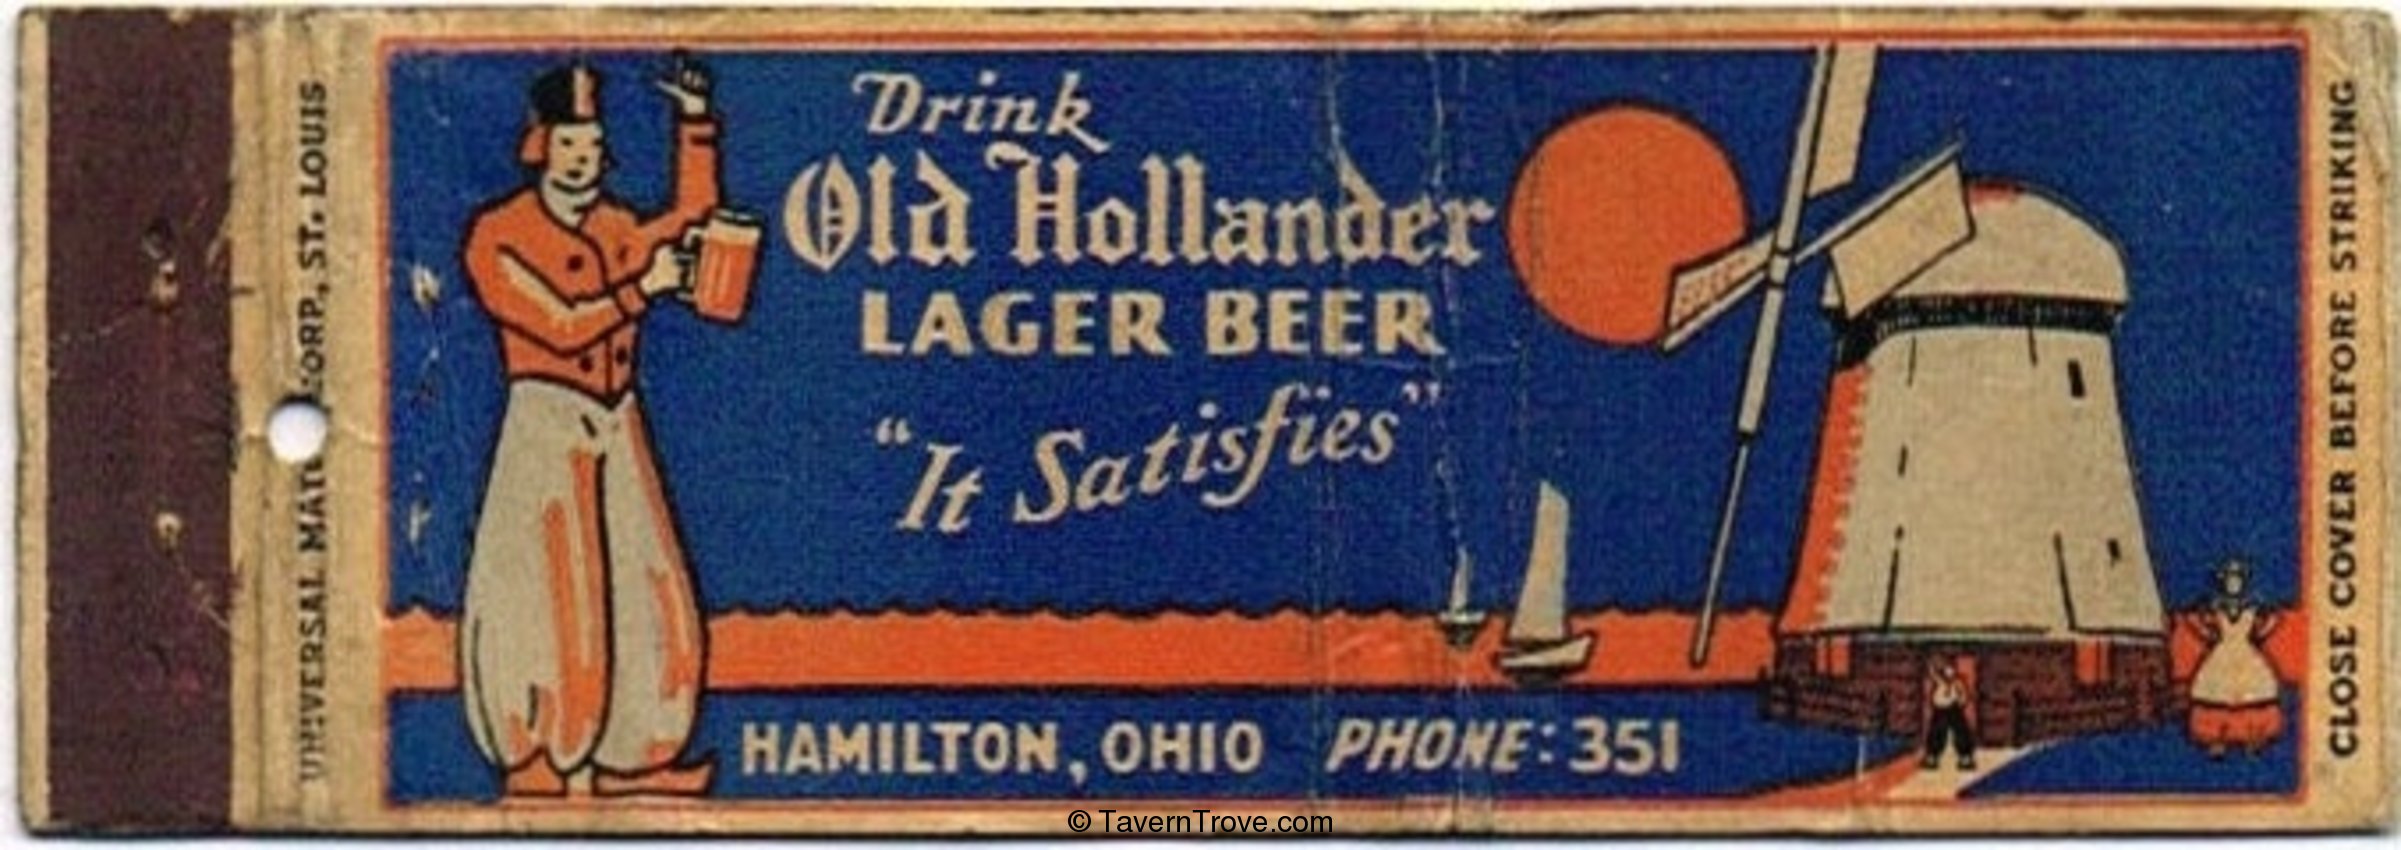 Old Hollander Lager Beer